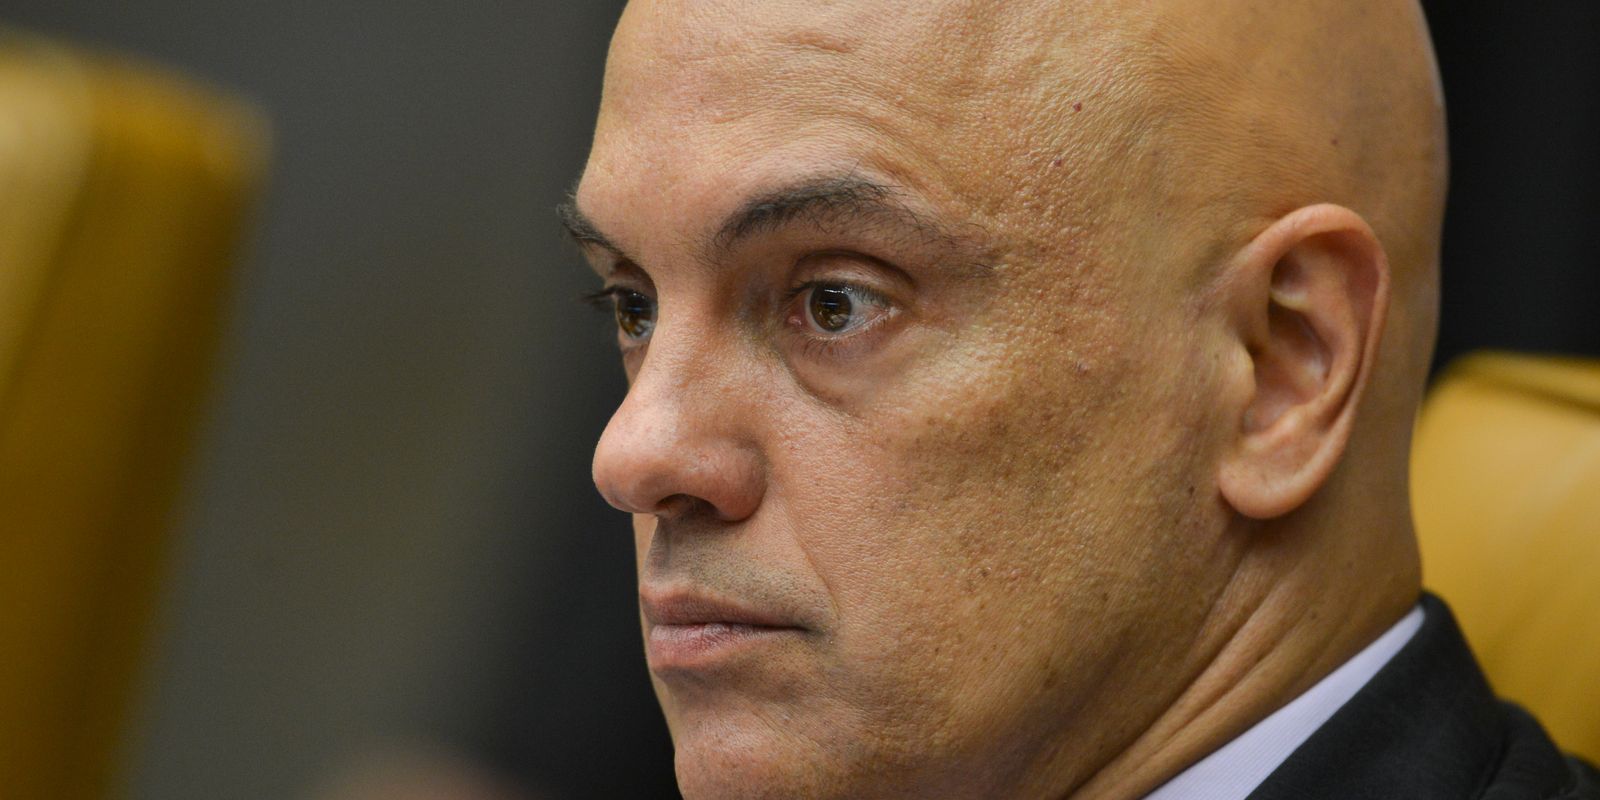 O miinistro Alexandre de Moraes, durante julgamento da validade de prisão em segunda instância